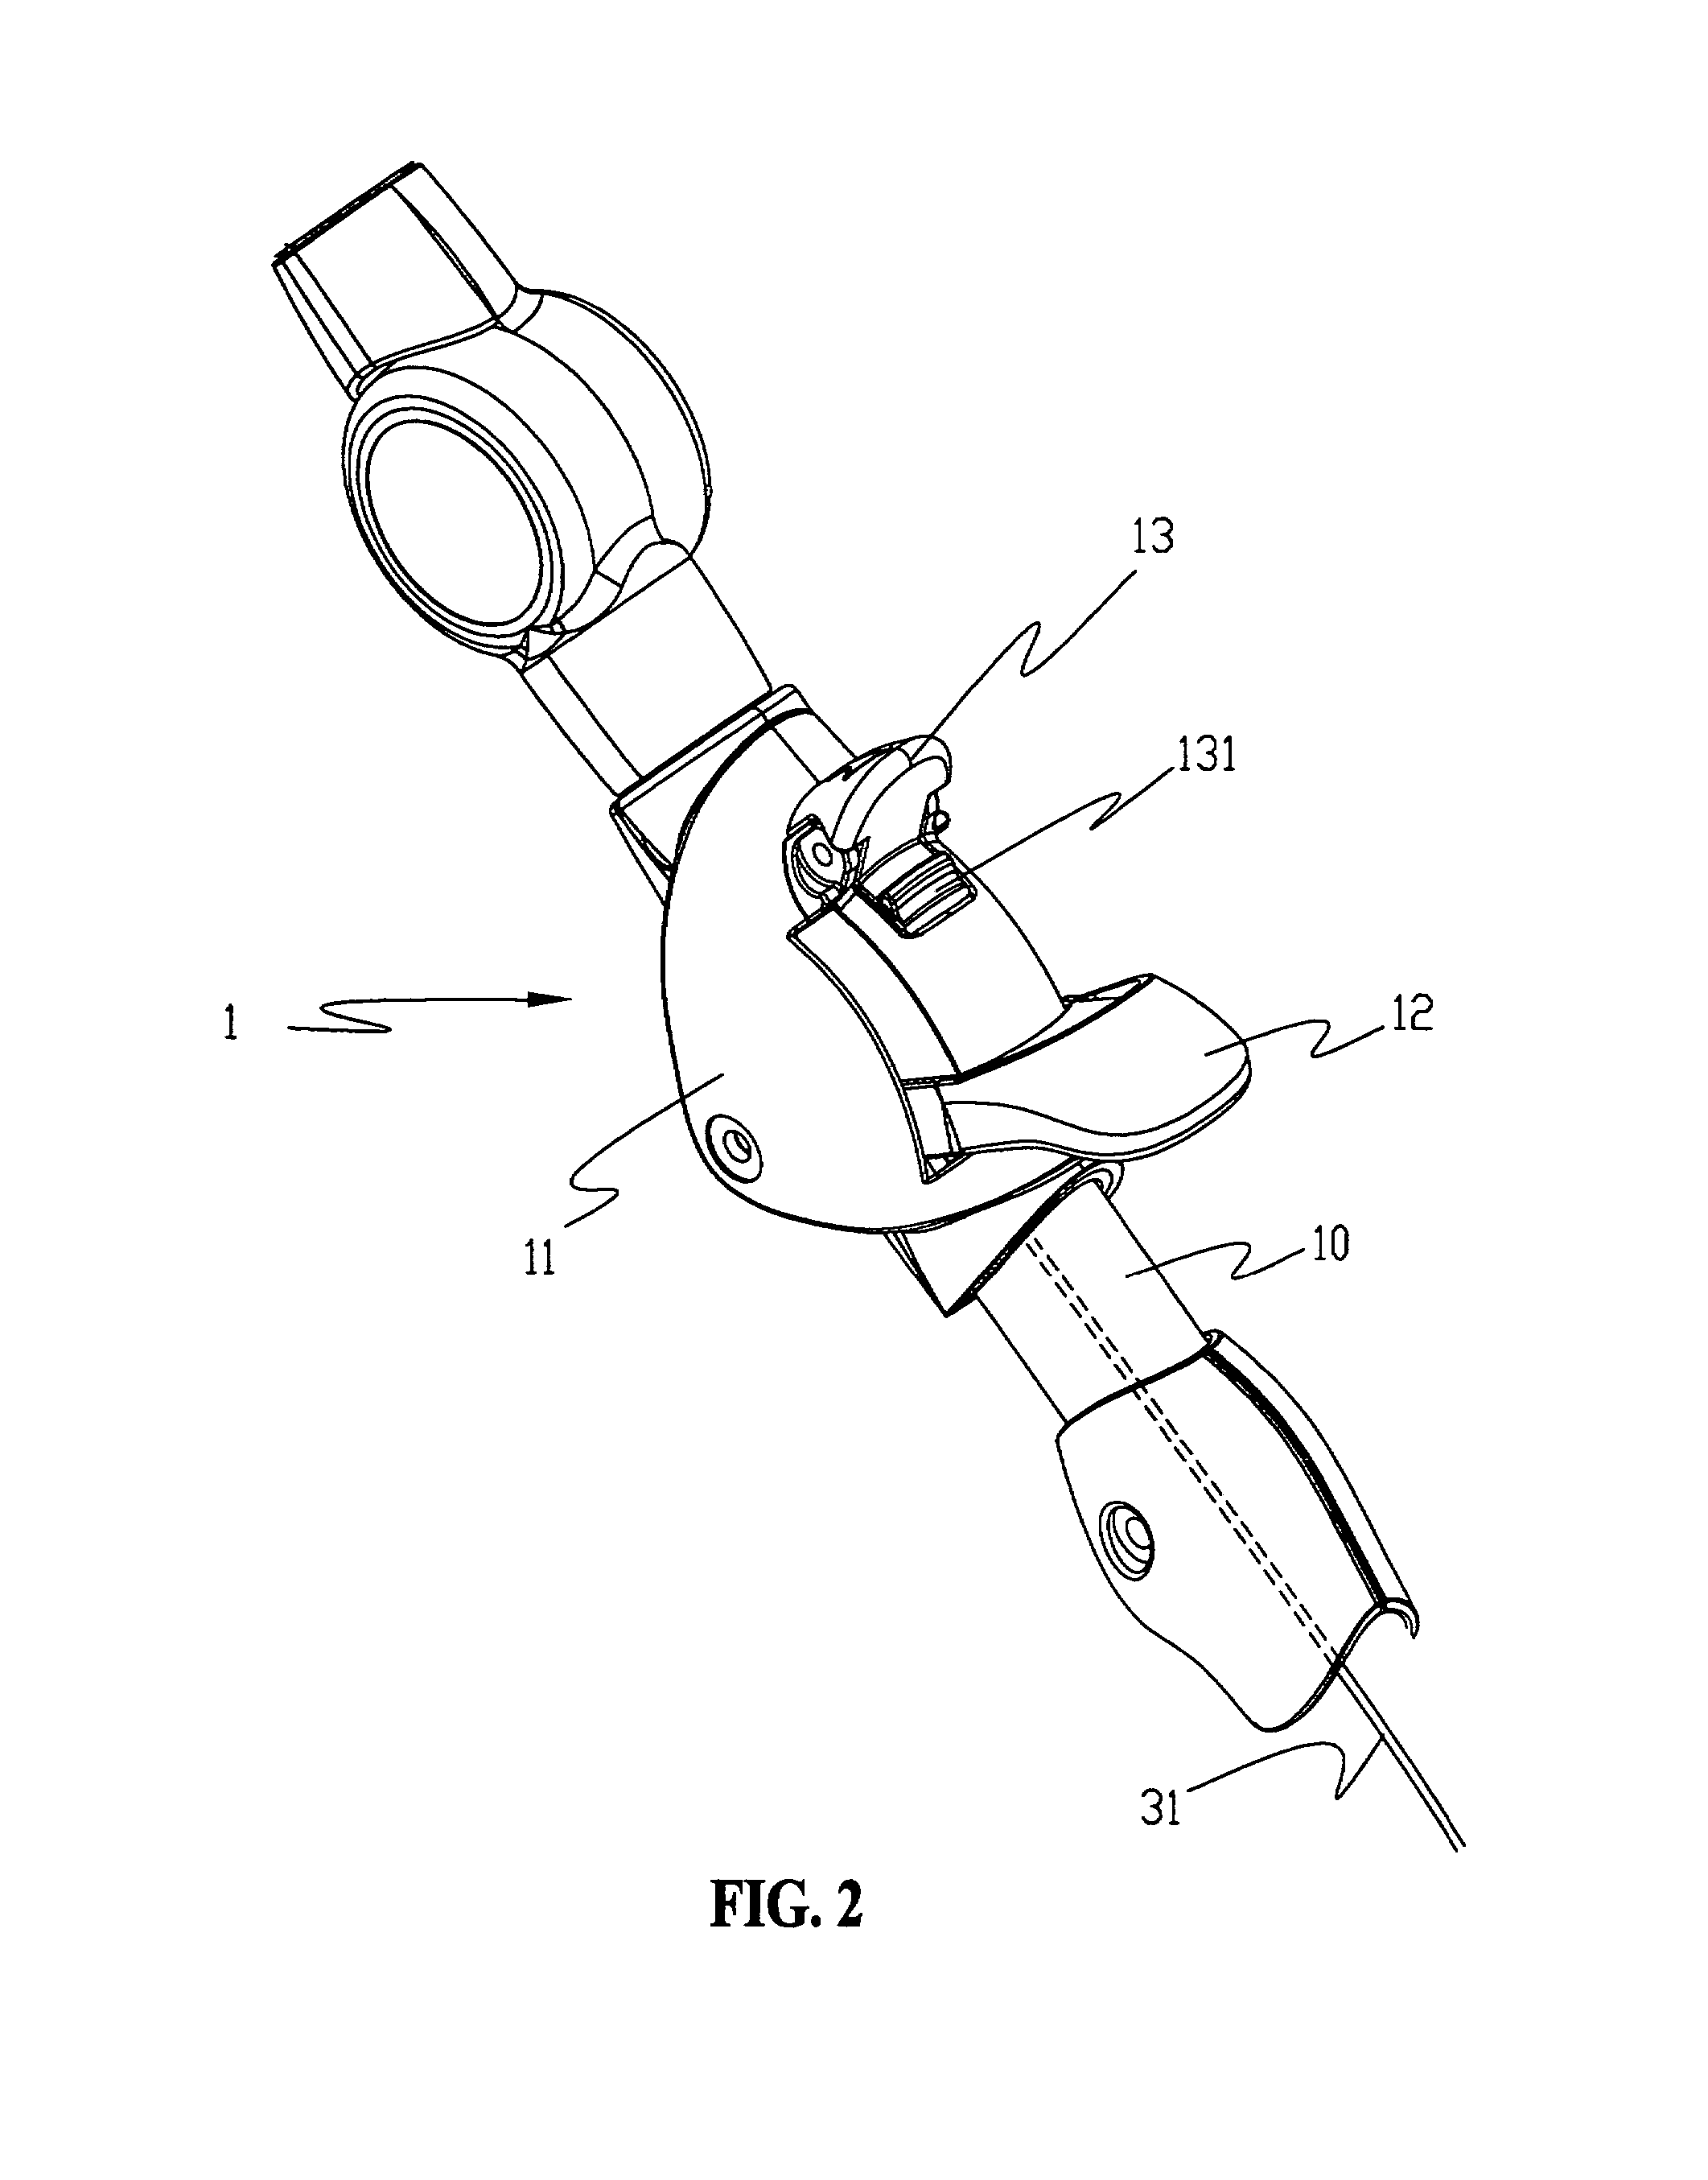 Brake mechanism for a baby stroller